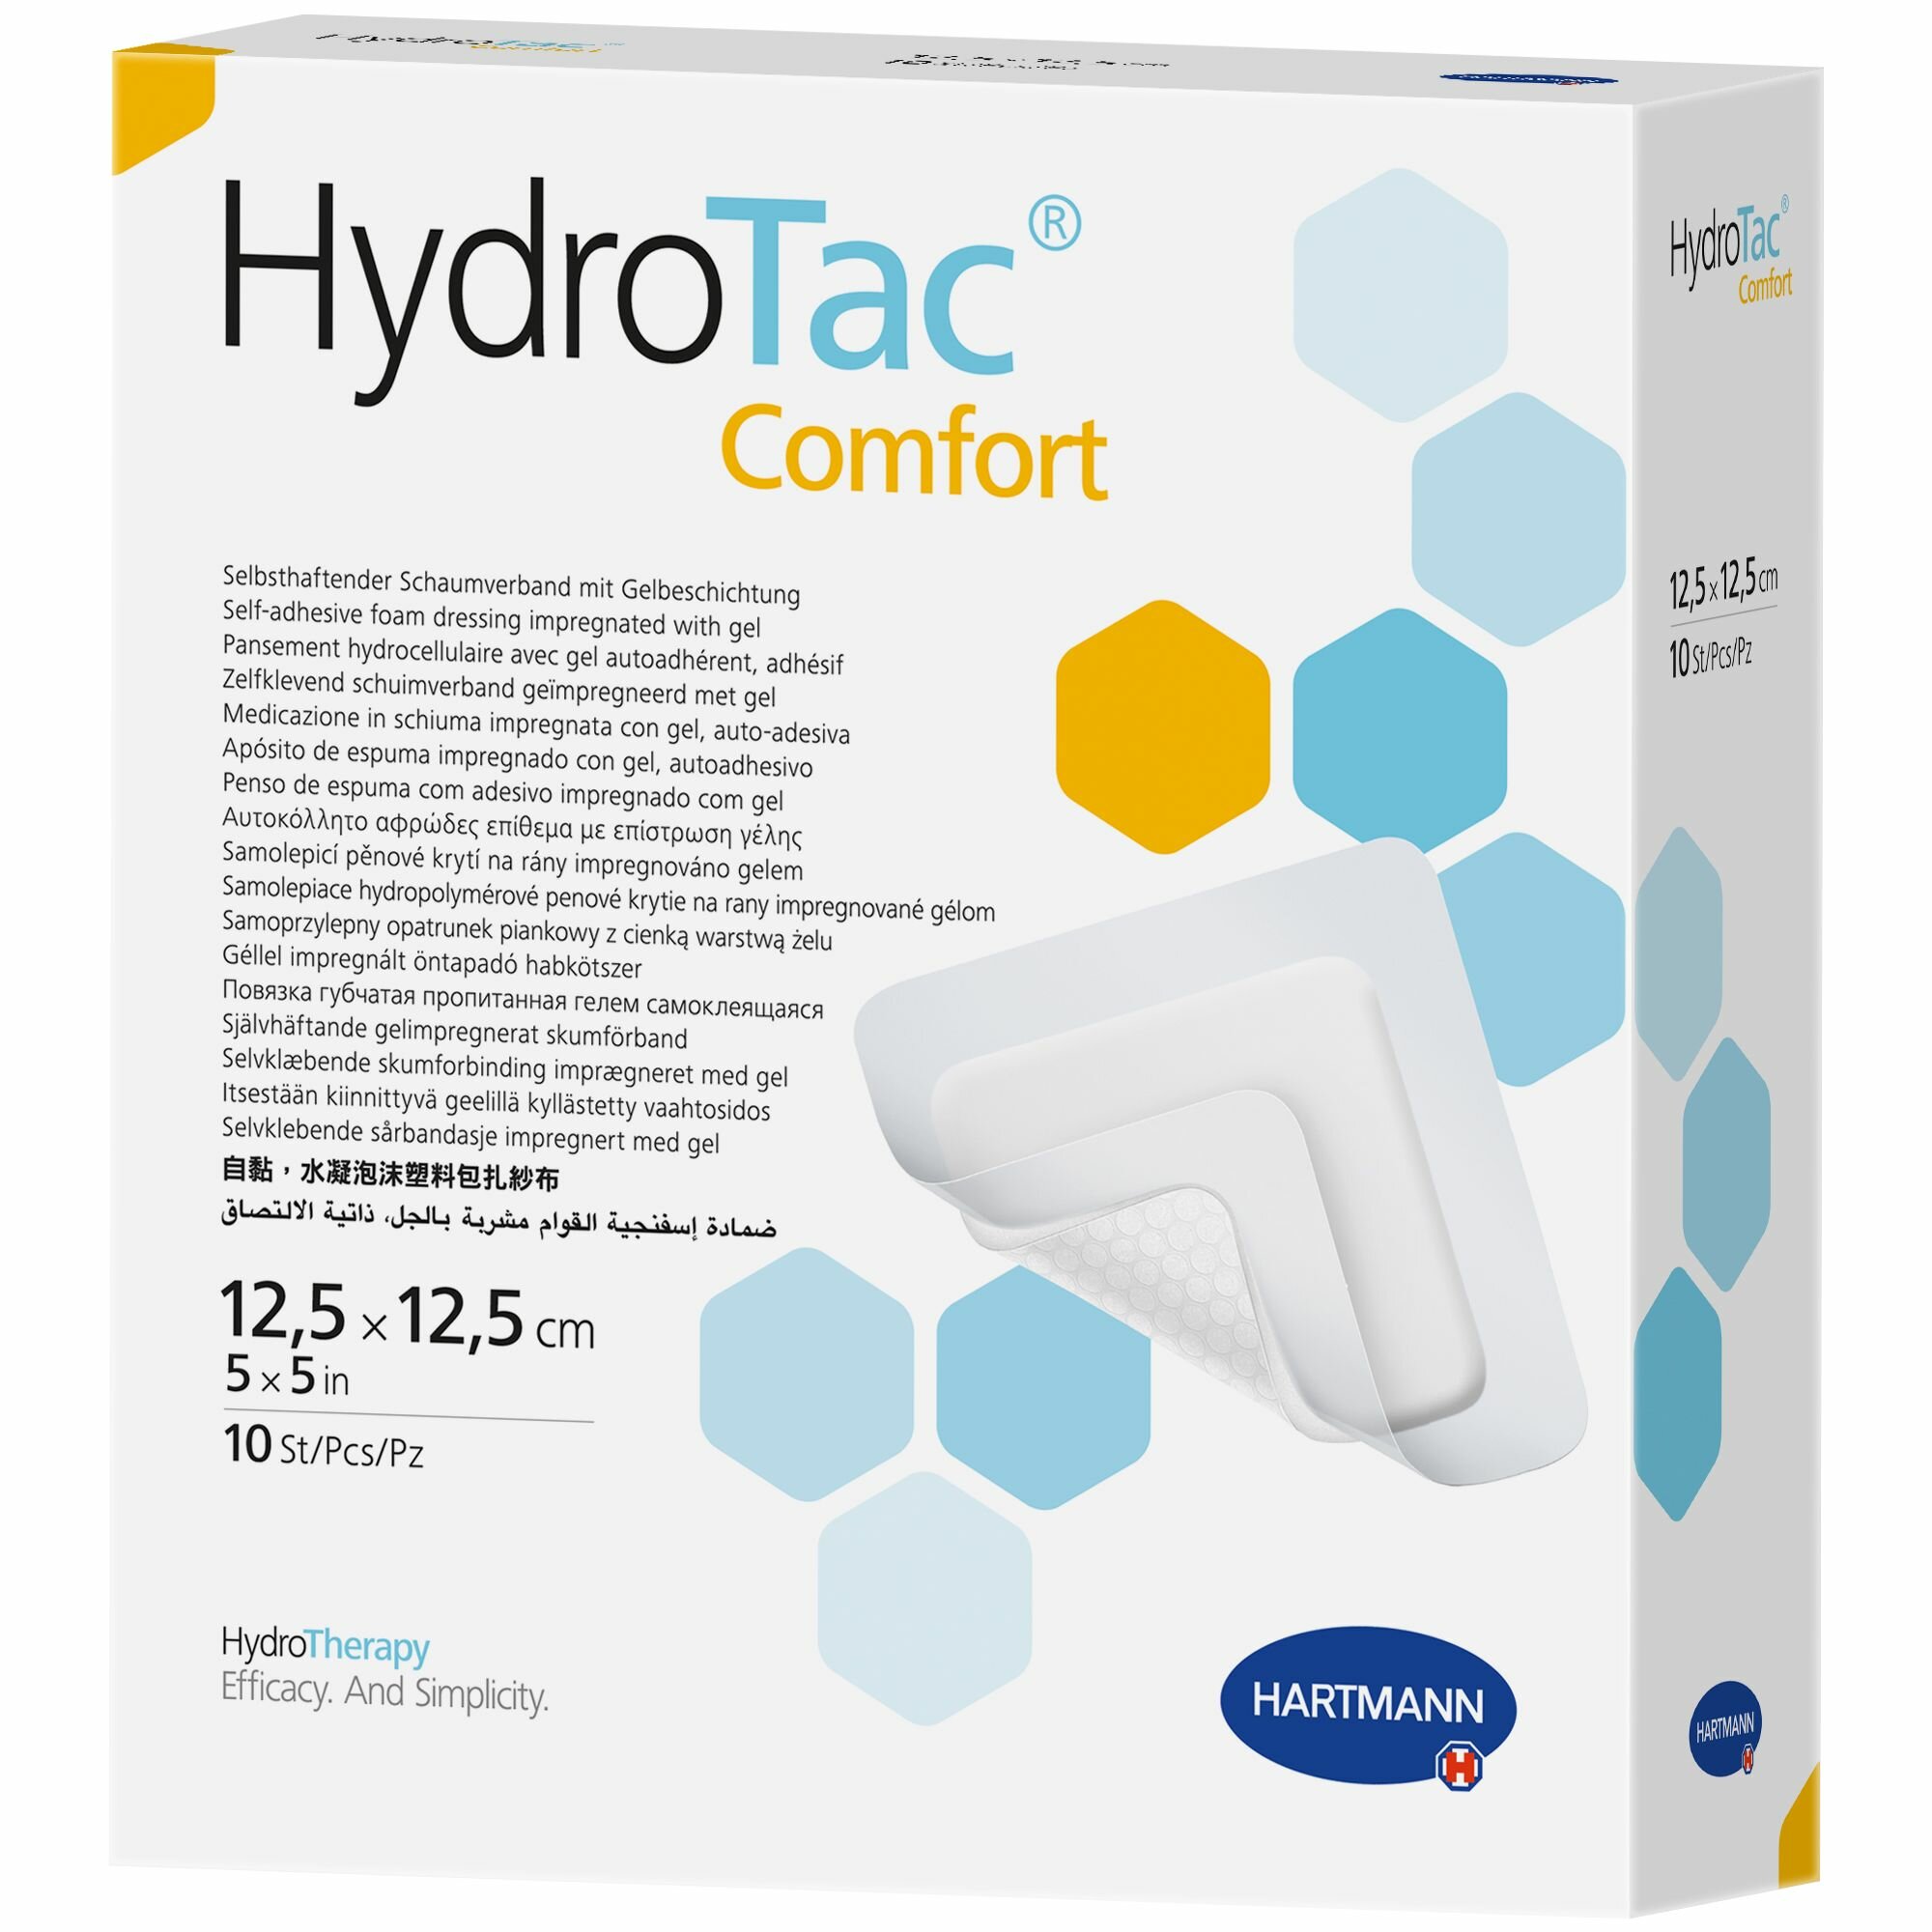 HYDROTAC comfort / гидротак комфорт - Самофиксирующаяся гидроактивная повязка на рану с уникальной технологией "AquaClear Gel": 12,5х12,5 см, 10 шт.